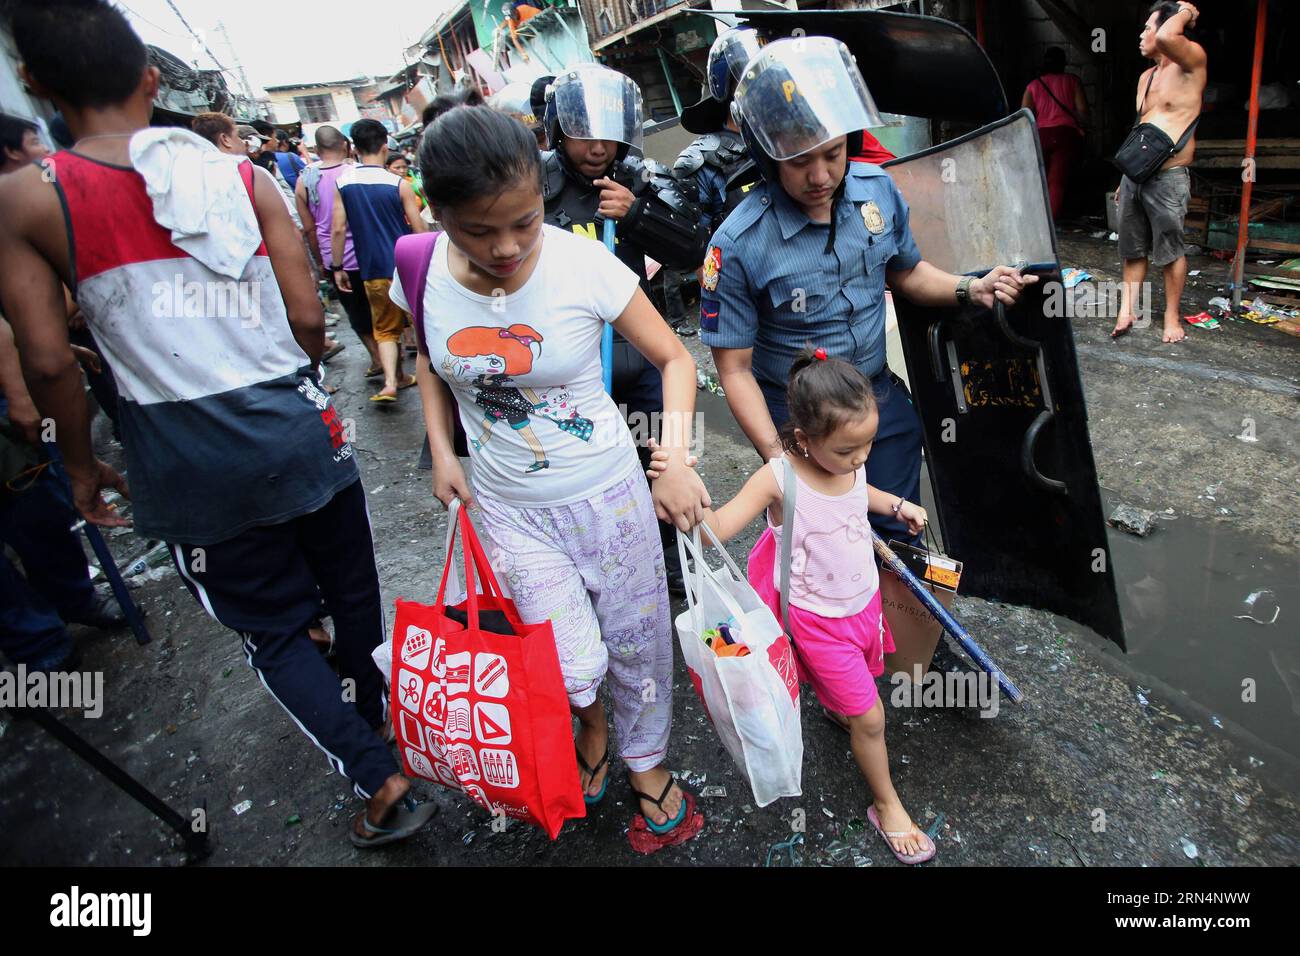 AKTUELLES ZEITGESCHEHEN Philippinen: Ausschreitungen bei Räumung und Abriss eines Armenviertels (150526) -- CALOOCAN CITY, 26 maggio 2015 -- Un poliziotto aiuta una donna e una ragazza mentre le squadre di demolizione smantellano le baraccopoli a Caloocan City, Filippine, 26 maggio 2015. Quattro persone sono rimaste ferite mentre altre due sono state arrestate dopo che i residenti si sono scontrati con le autorità. 500 famiglie sono state lasciate senza tetto nella demolizione della zona baraccopoli. ) FILIPPINE-CALOOCAN CITY-SLUM AREA DEMOLITION RouellexUmali PUBLICATIONxNOTxINxCHN News eventi attuali Filippine Riots at Clearance and Demolition a Poor di Foto Stock